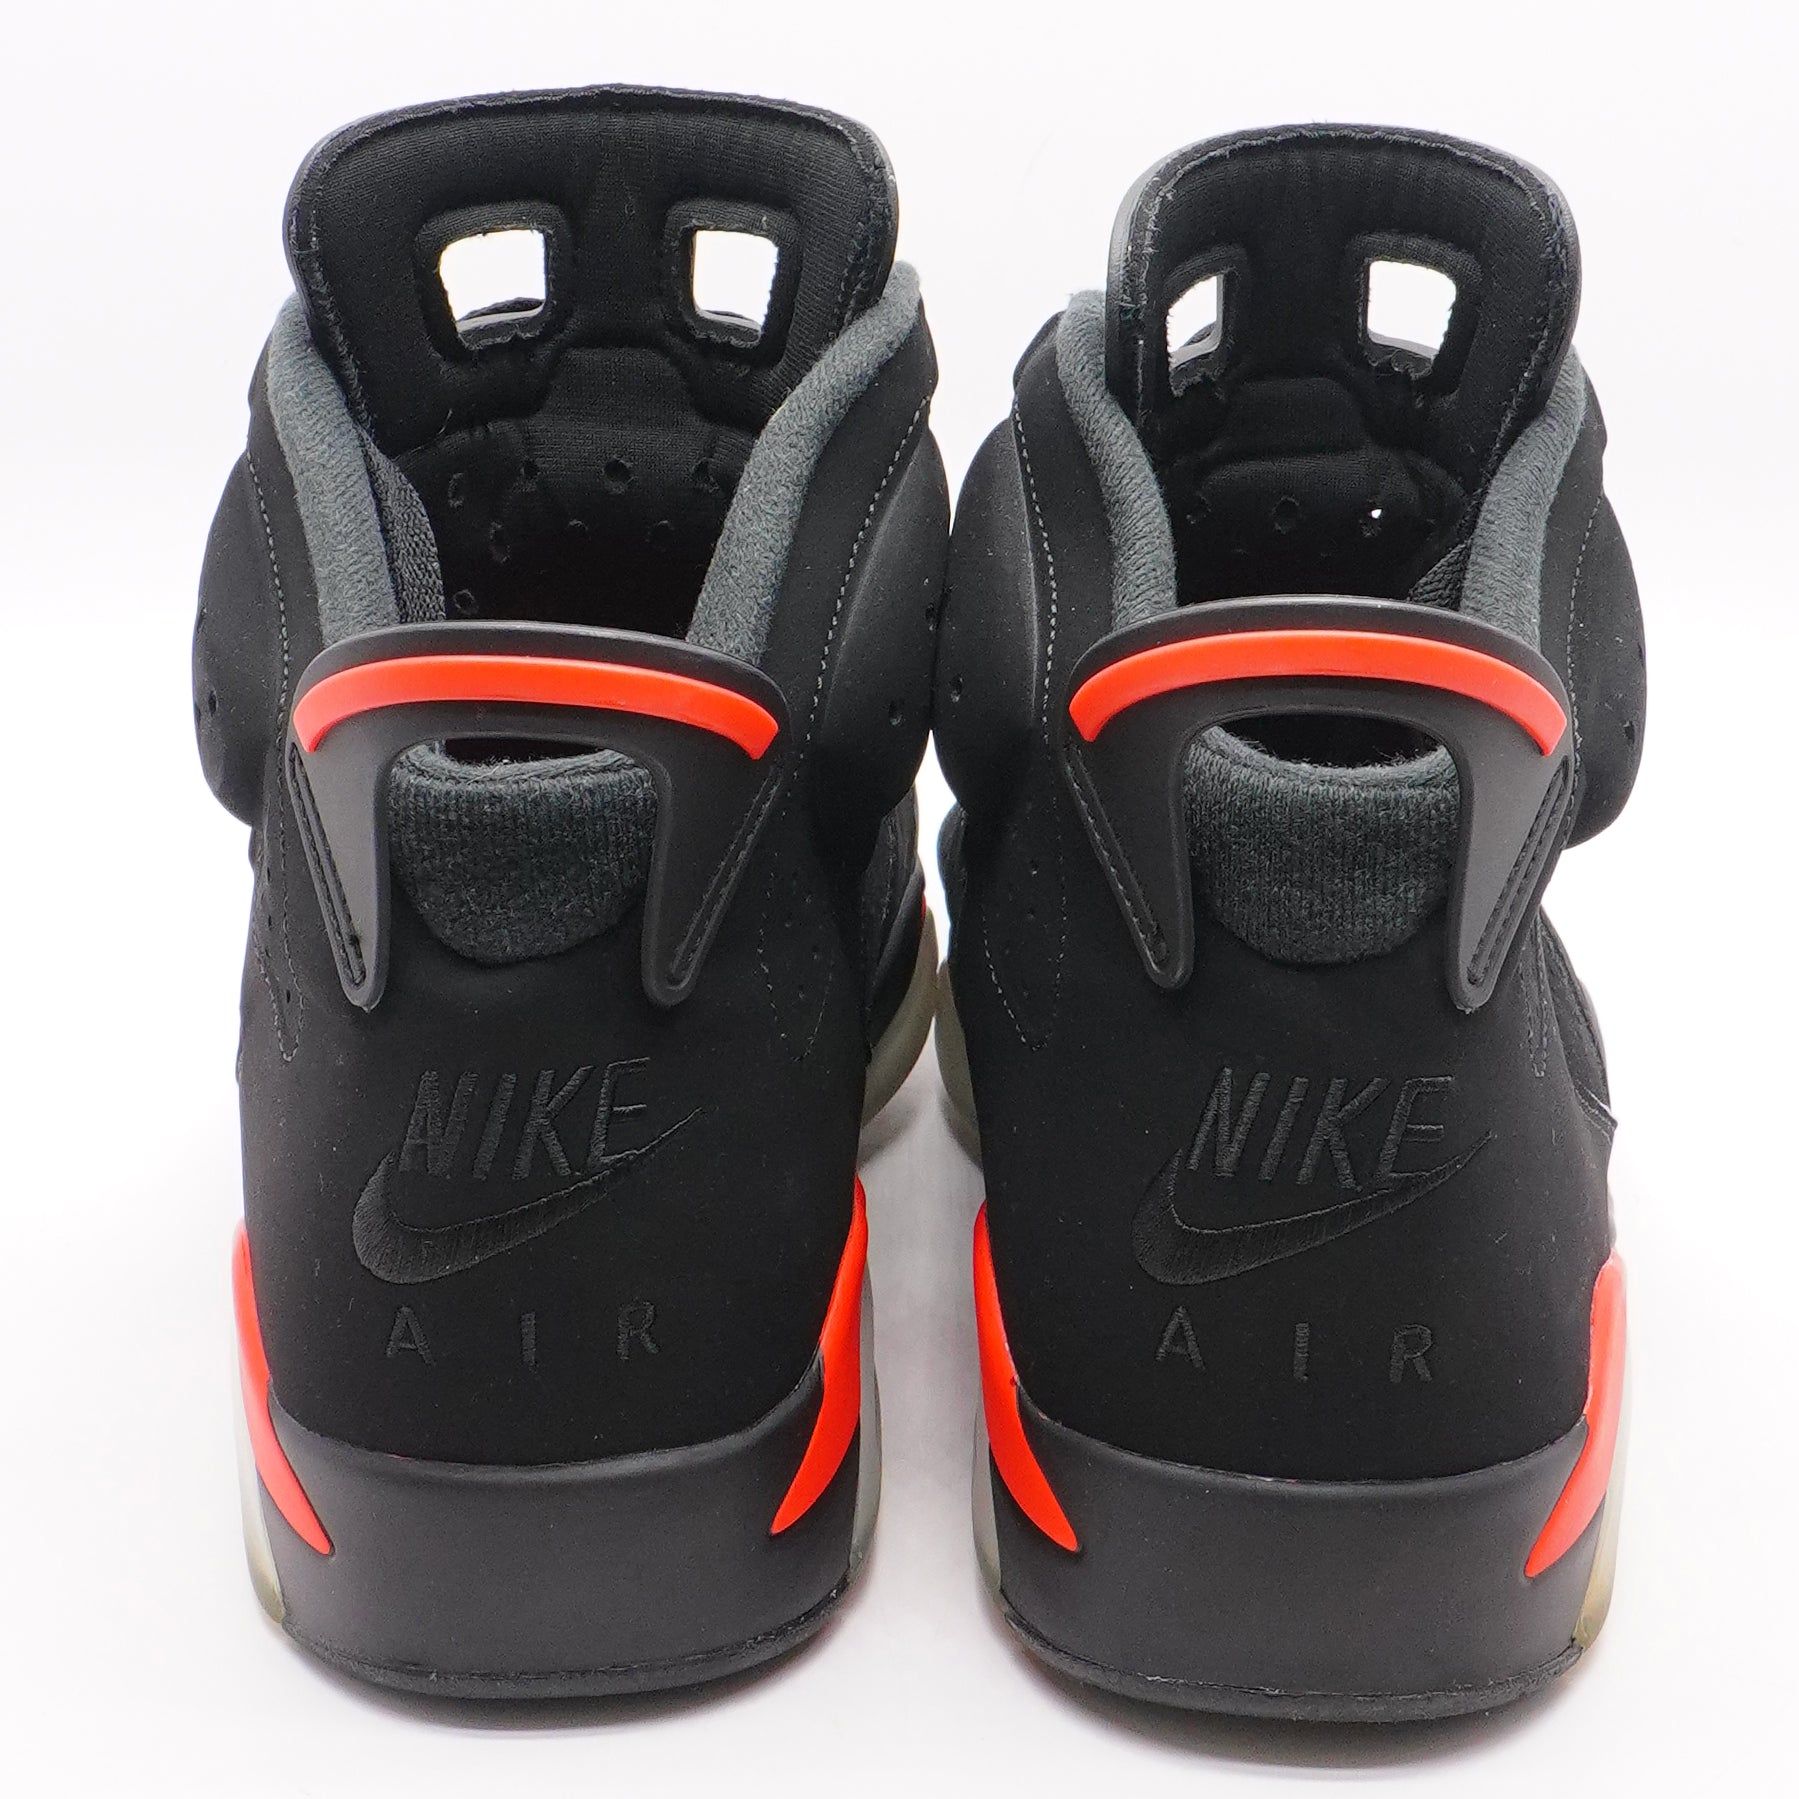 Jordan 6 Retro High-Top Sneakers in Black Infrared